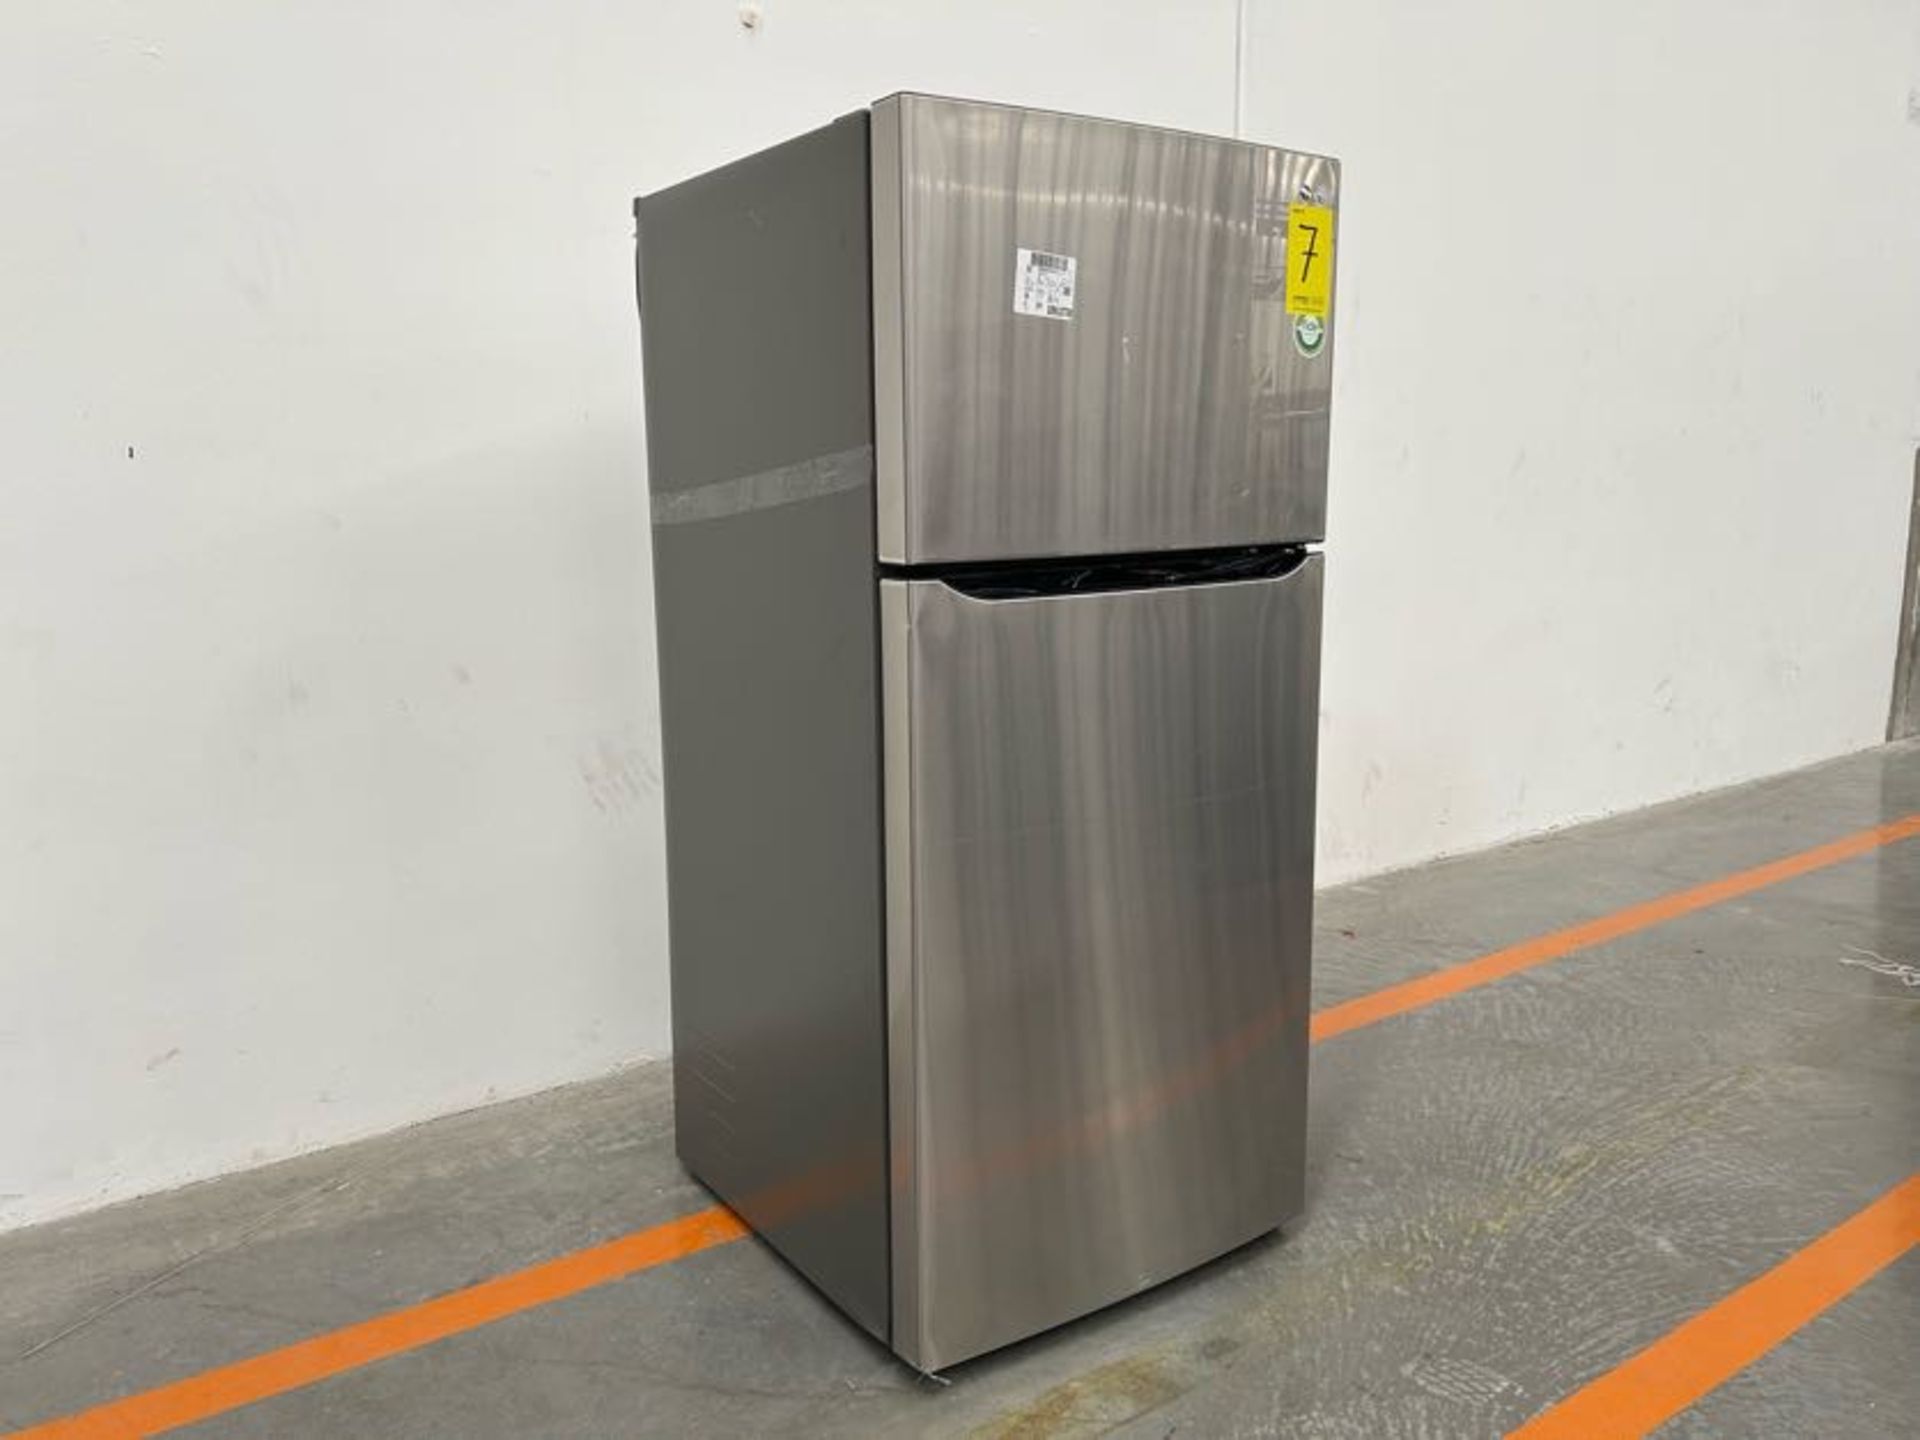 Refrigerador Marca LG, Modelo LT57BPSX, Serie 2Z784, Color GRIS (Equipo de devolución) - Image 3 of 7